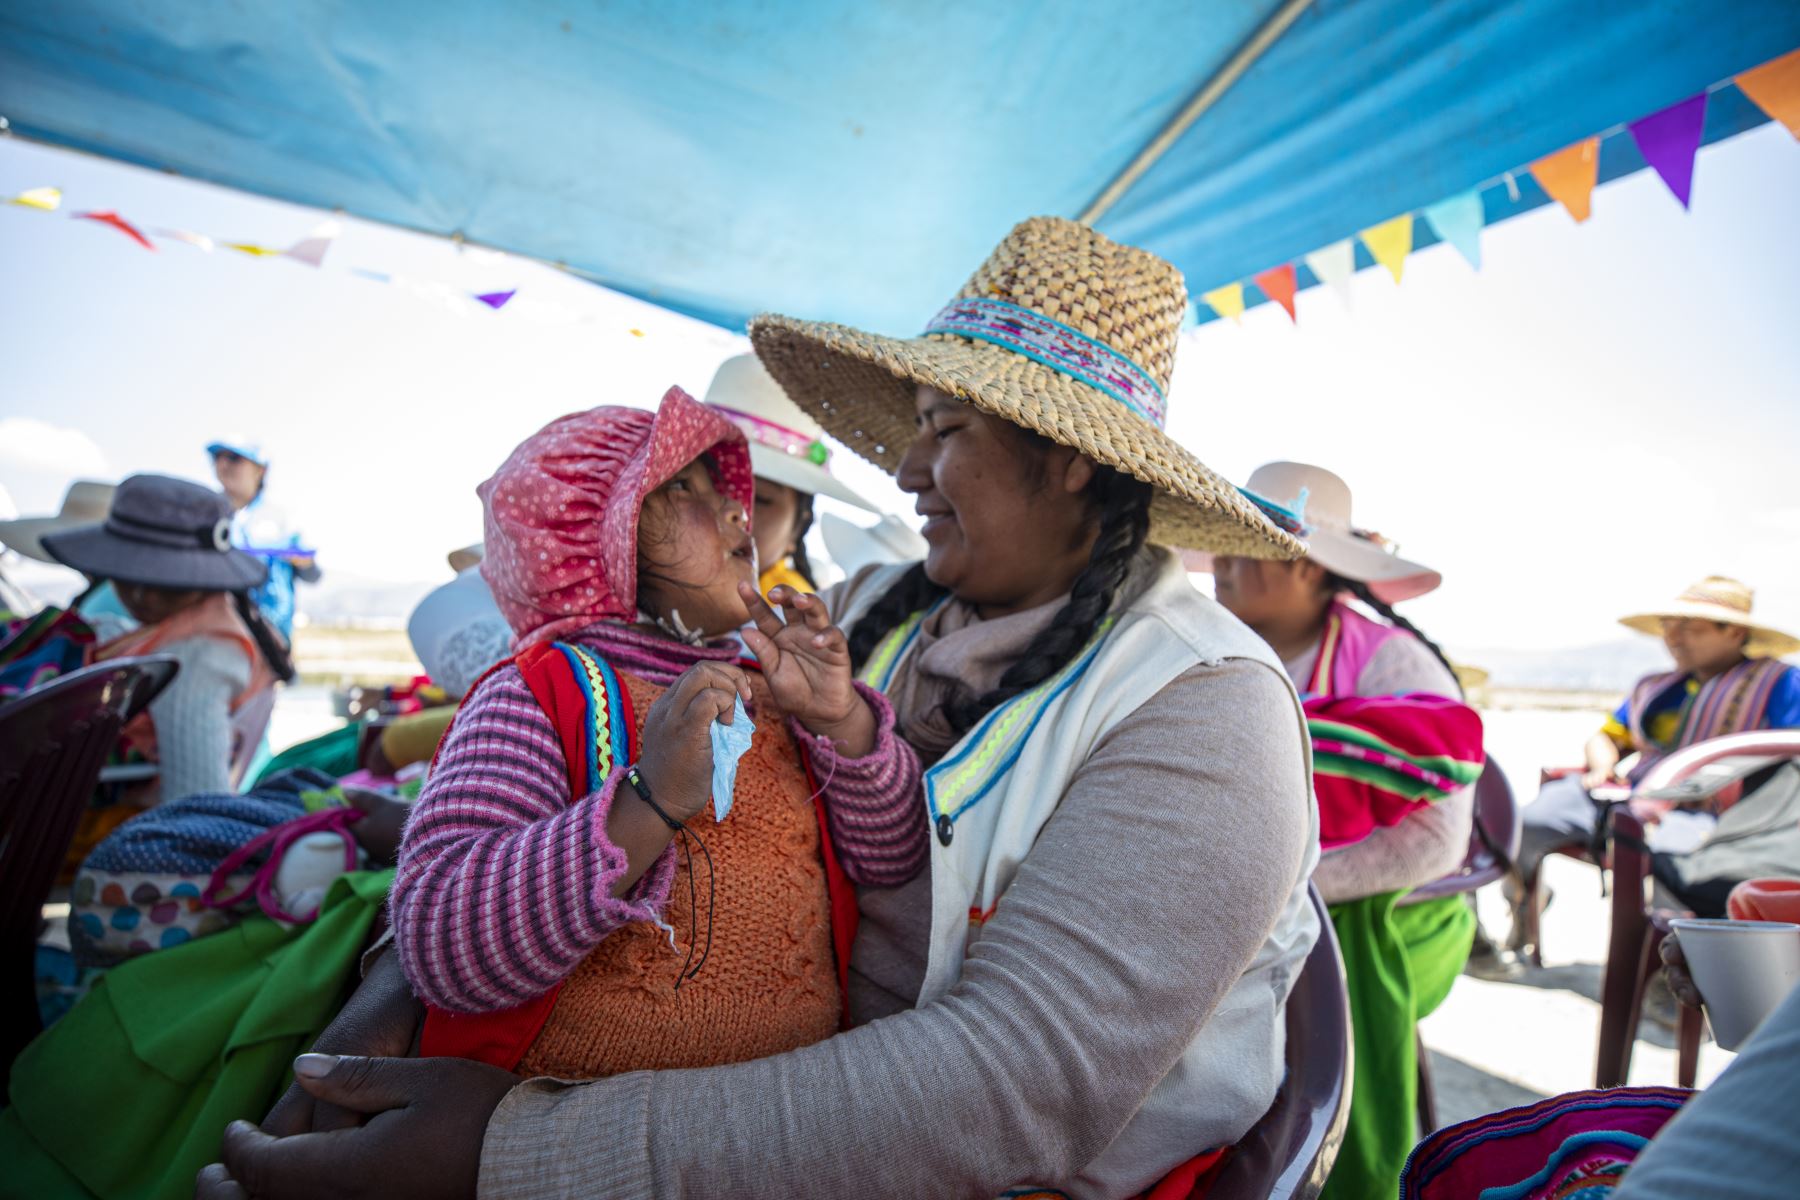 Seguro Social de Salud - EsSalud  llevó a cabo la campaña "Lucha contra la anemia en los Uros", en la región Puno.
Foto: EsSalud